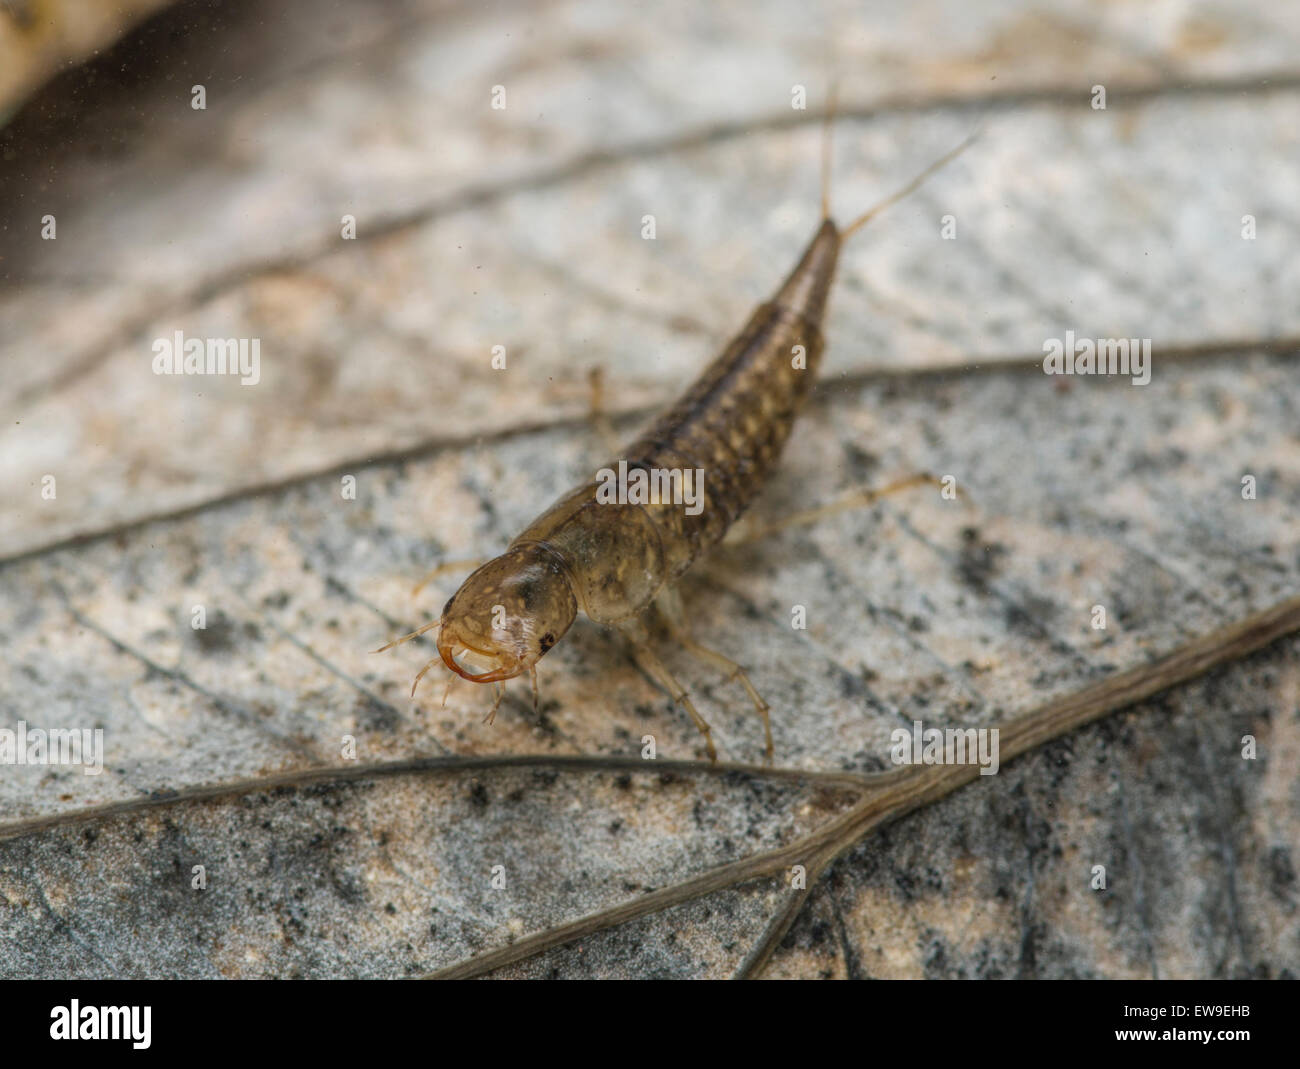 diving water beetle larva Stock Photo